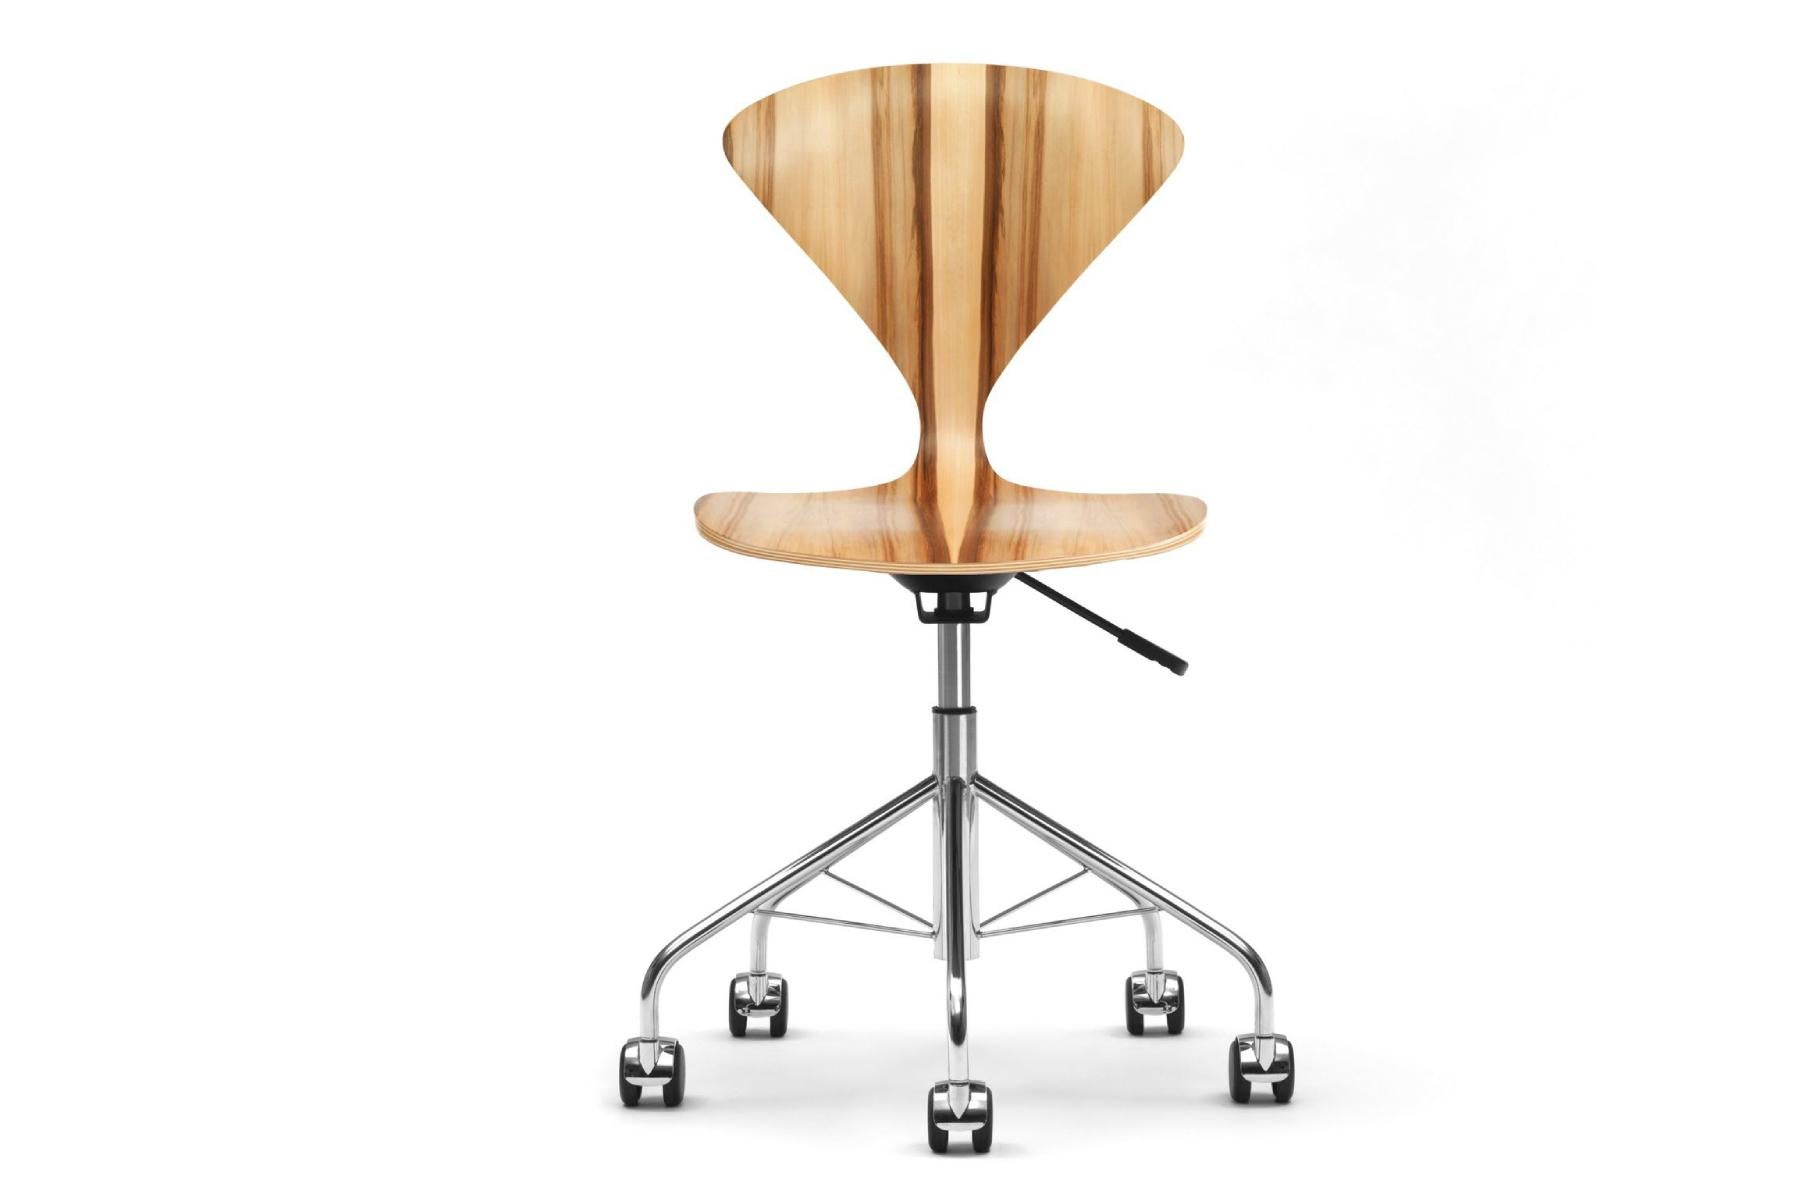 La chaise de travail en contreplaqué moulé de Norman Cherner, datant de 1958, est désormais accessible à une nouvelle génération de collectionneurs de meubles. Un ajout solide, léger et gracieux à la maison ou au bureau. La chaise de travail est